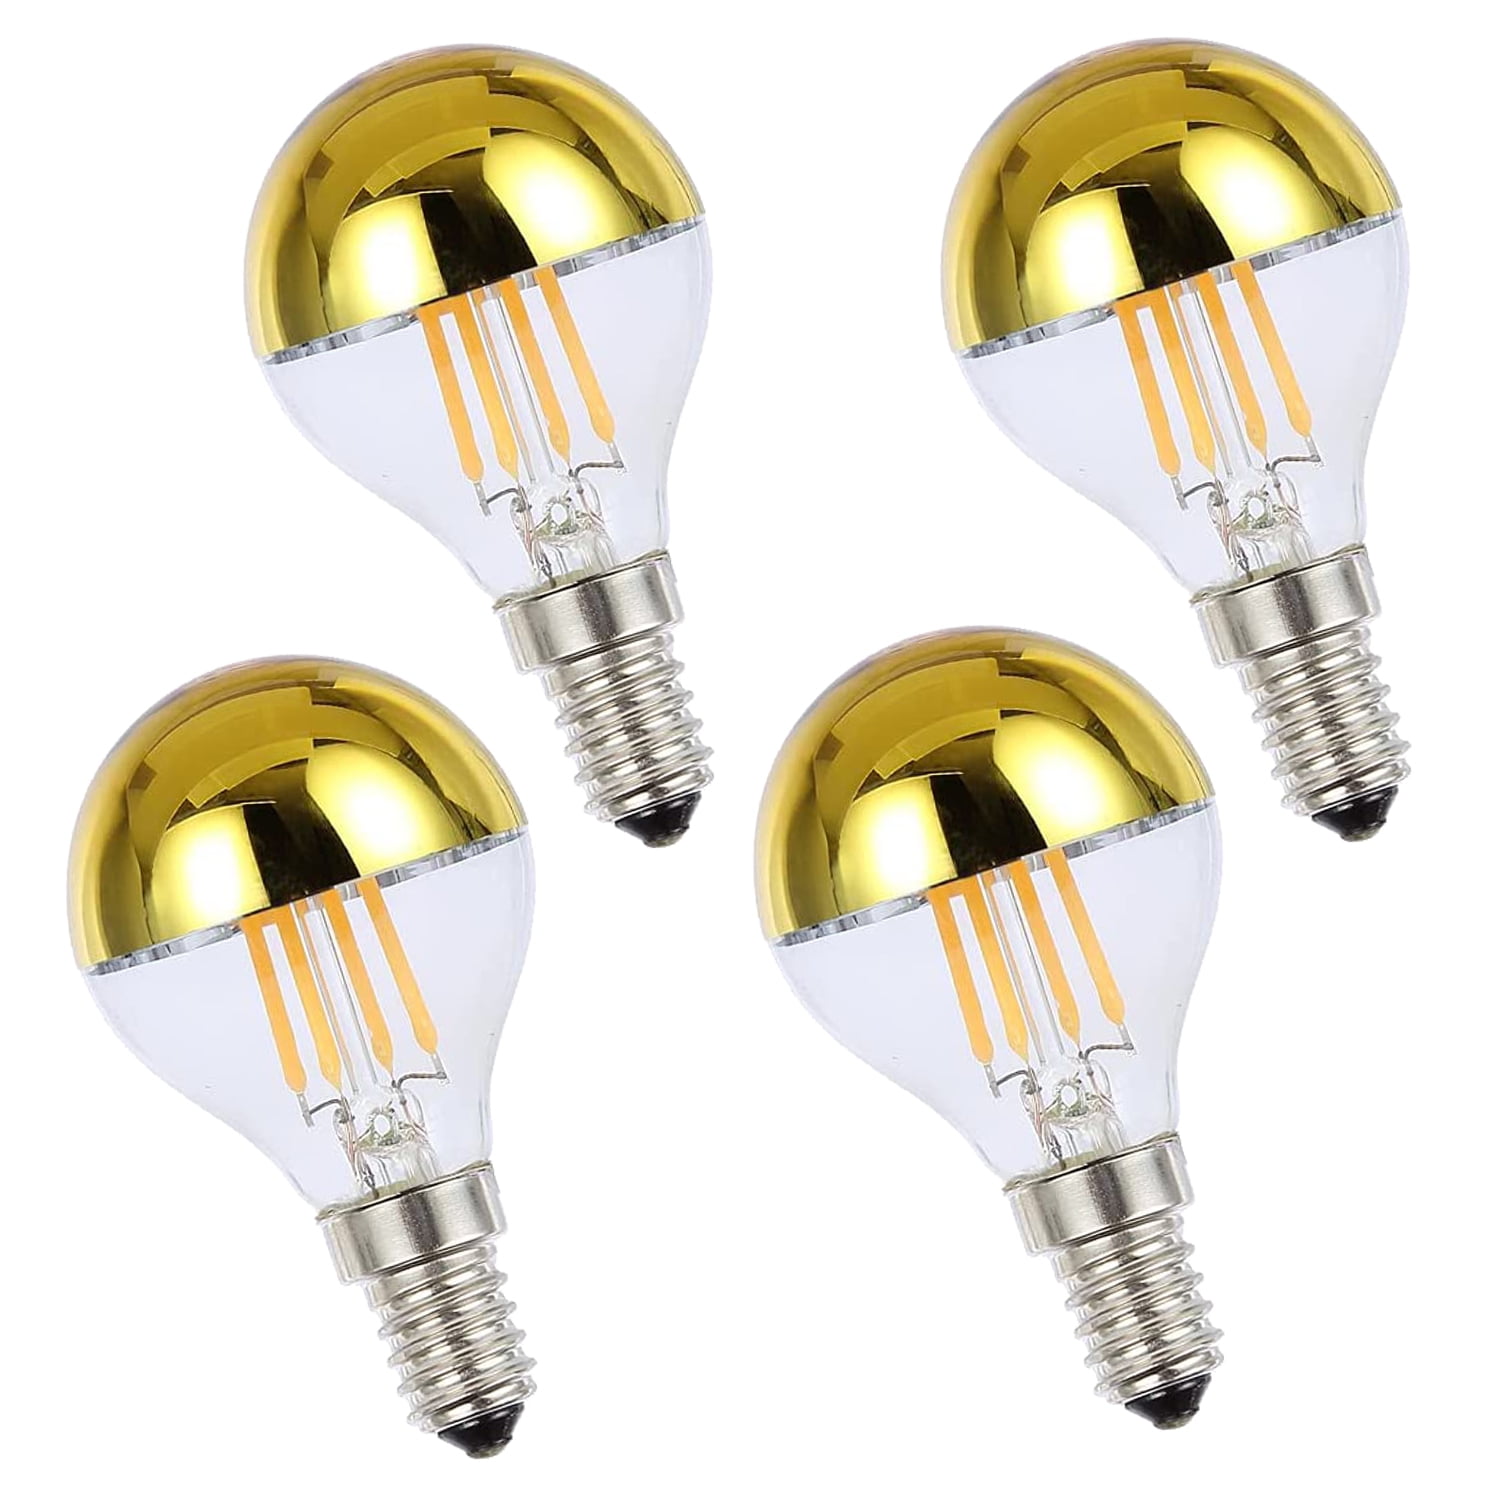 Ampoule LED G45 filament 4w dimmable E14 blanc chaud 2700k - RETIF